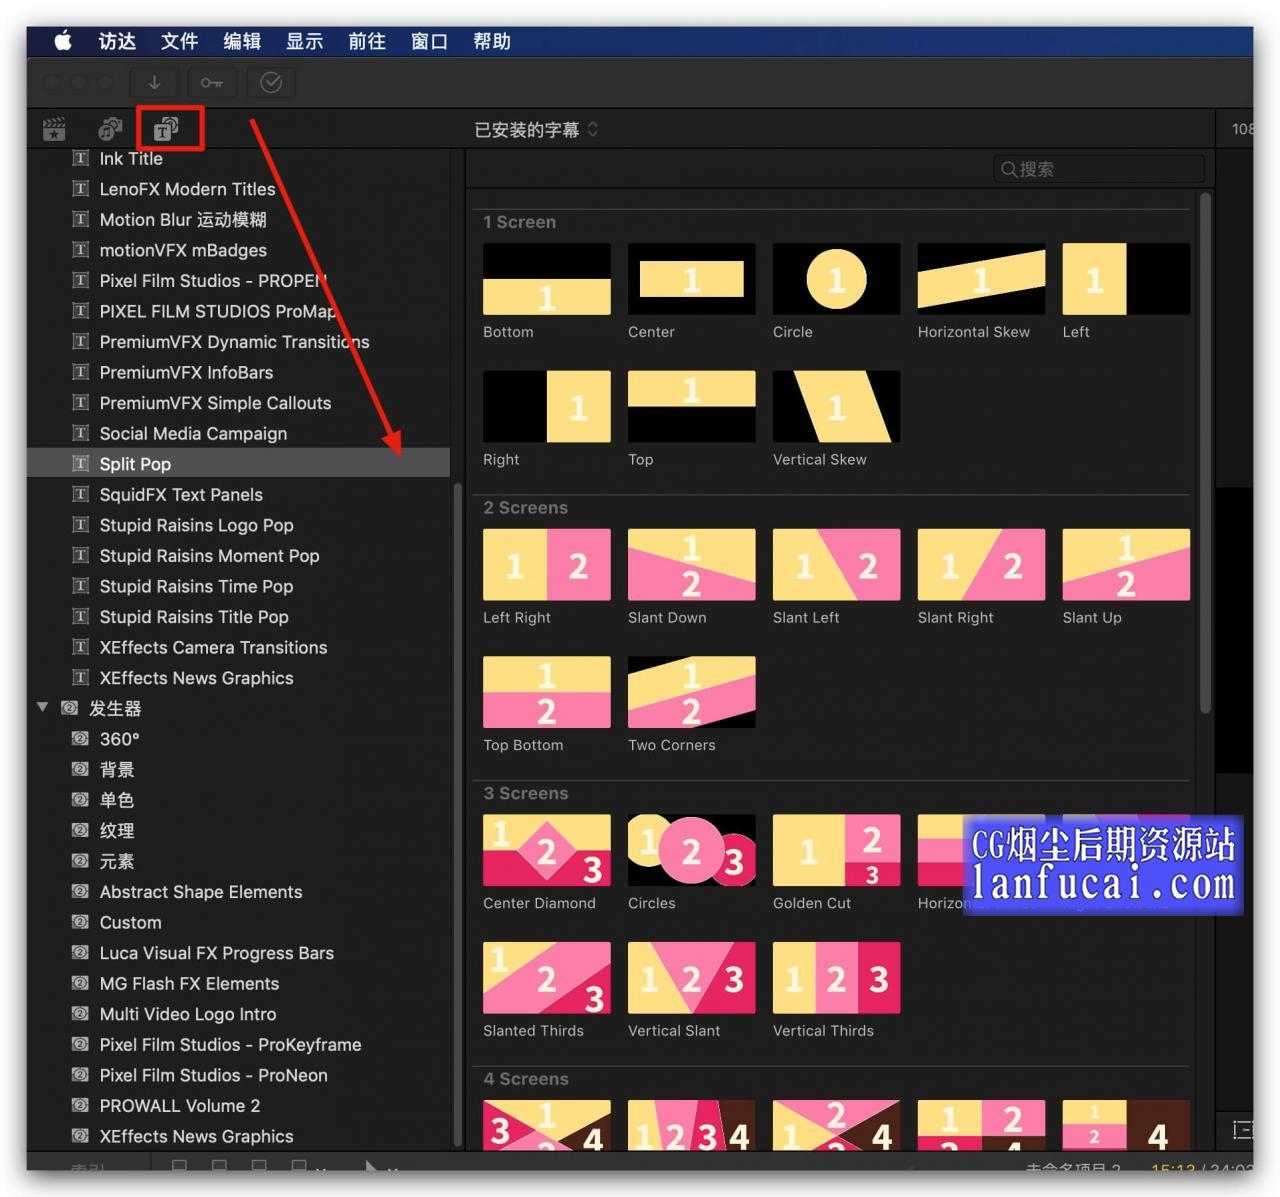 Fcpx分屏插件 41组视频分割可自定义分屏动画效果 支持M1 可分9屏 Split Pop